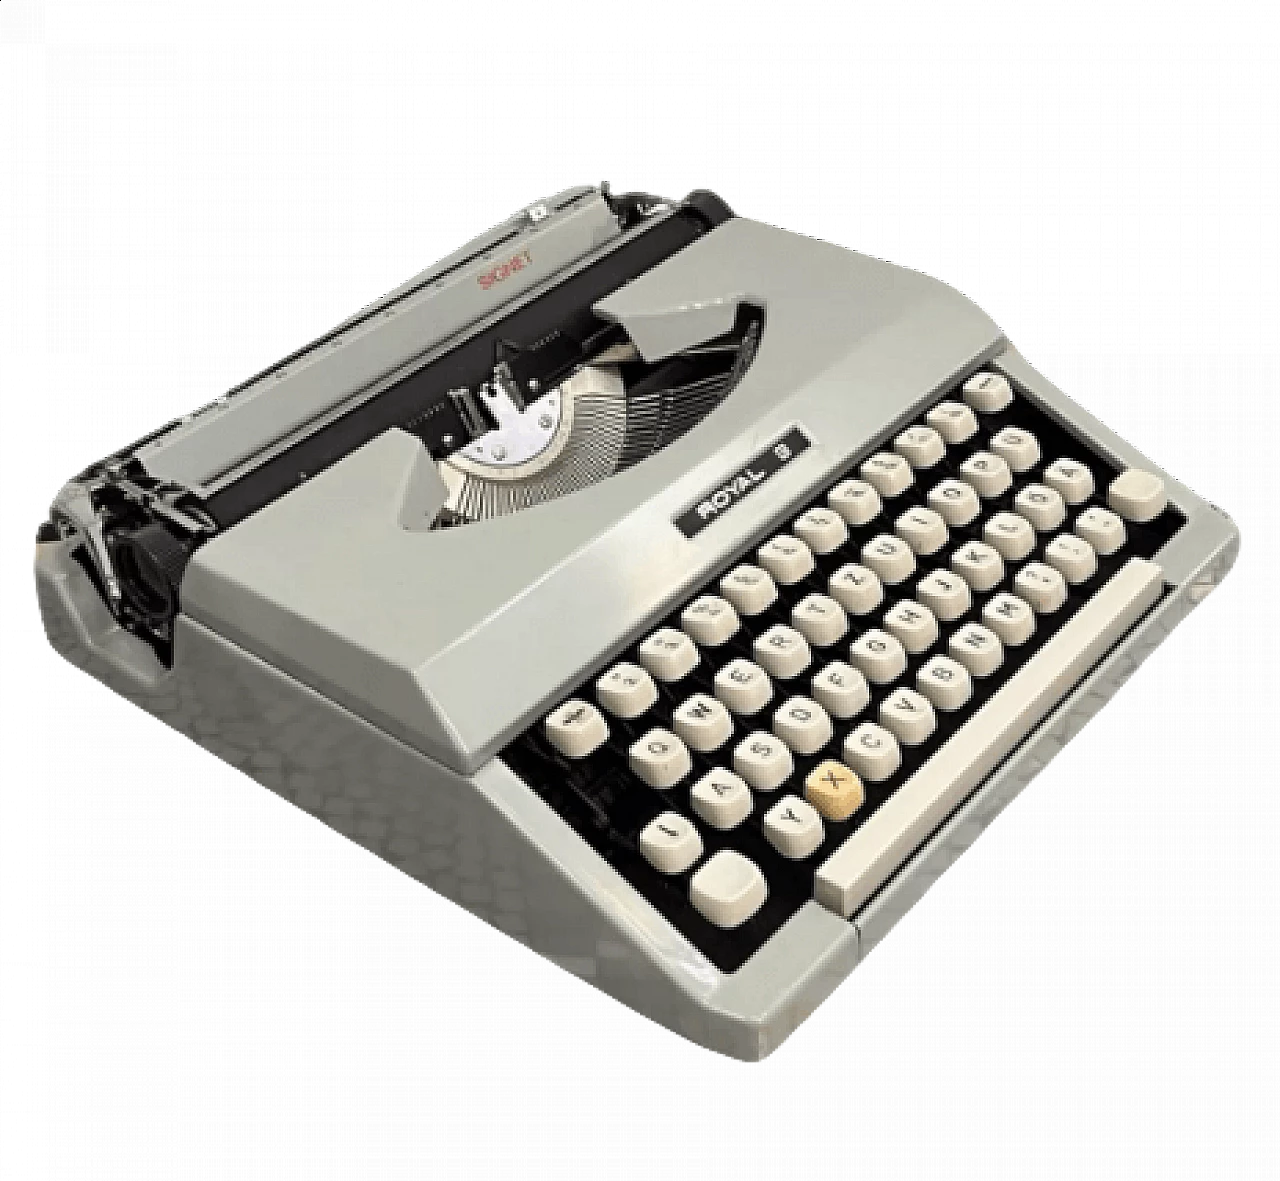 Japanese Royal Signet typewriter with case, 1970s 12